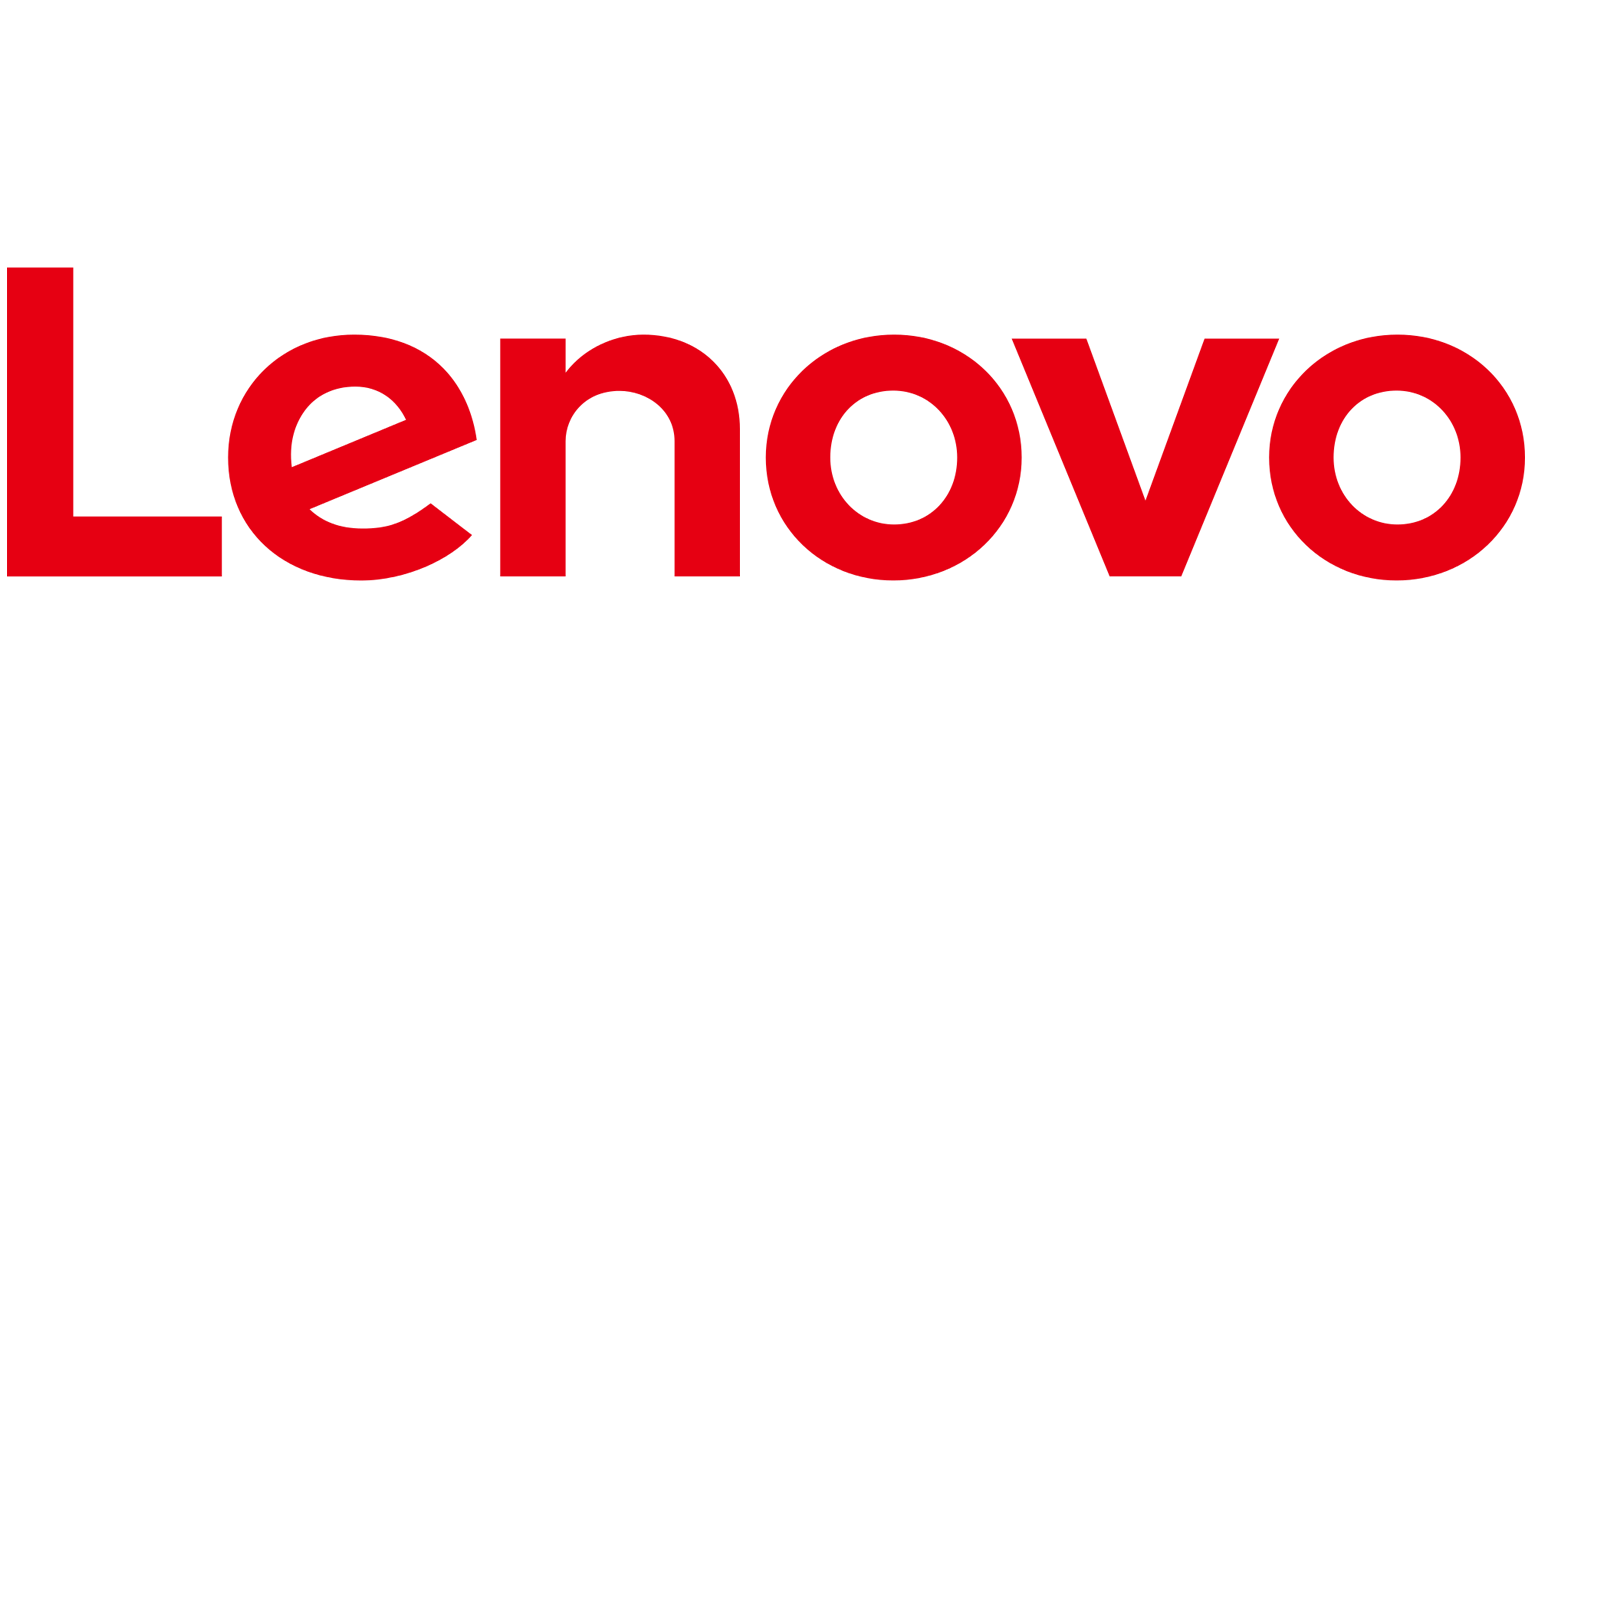 Lenovo kortingscode : Tot 12% korting op Lenovo laptops